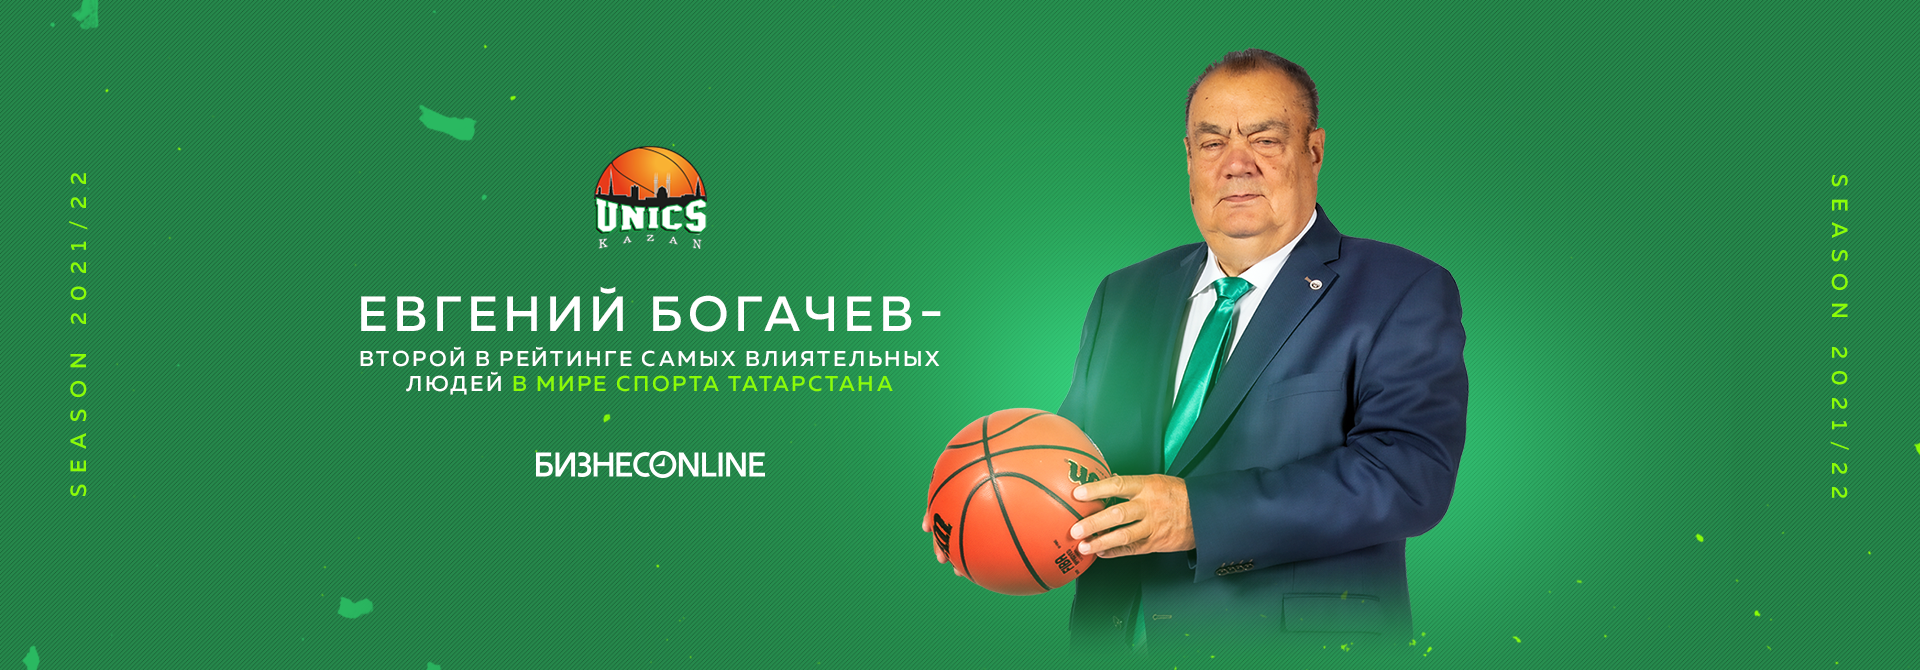 Евгений Богачев — второй в рейтинге самых влиятельных людей в мире спорта Татарстана